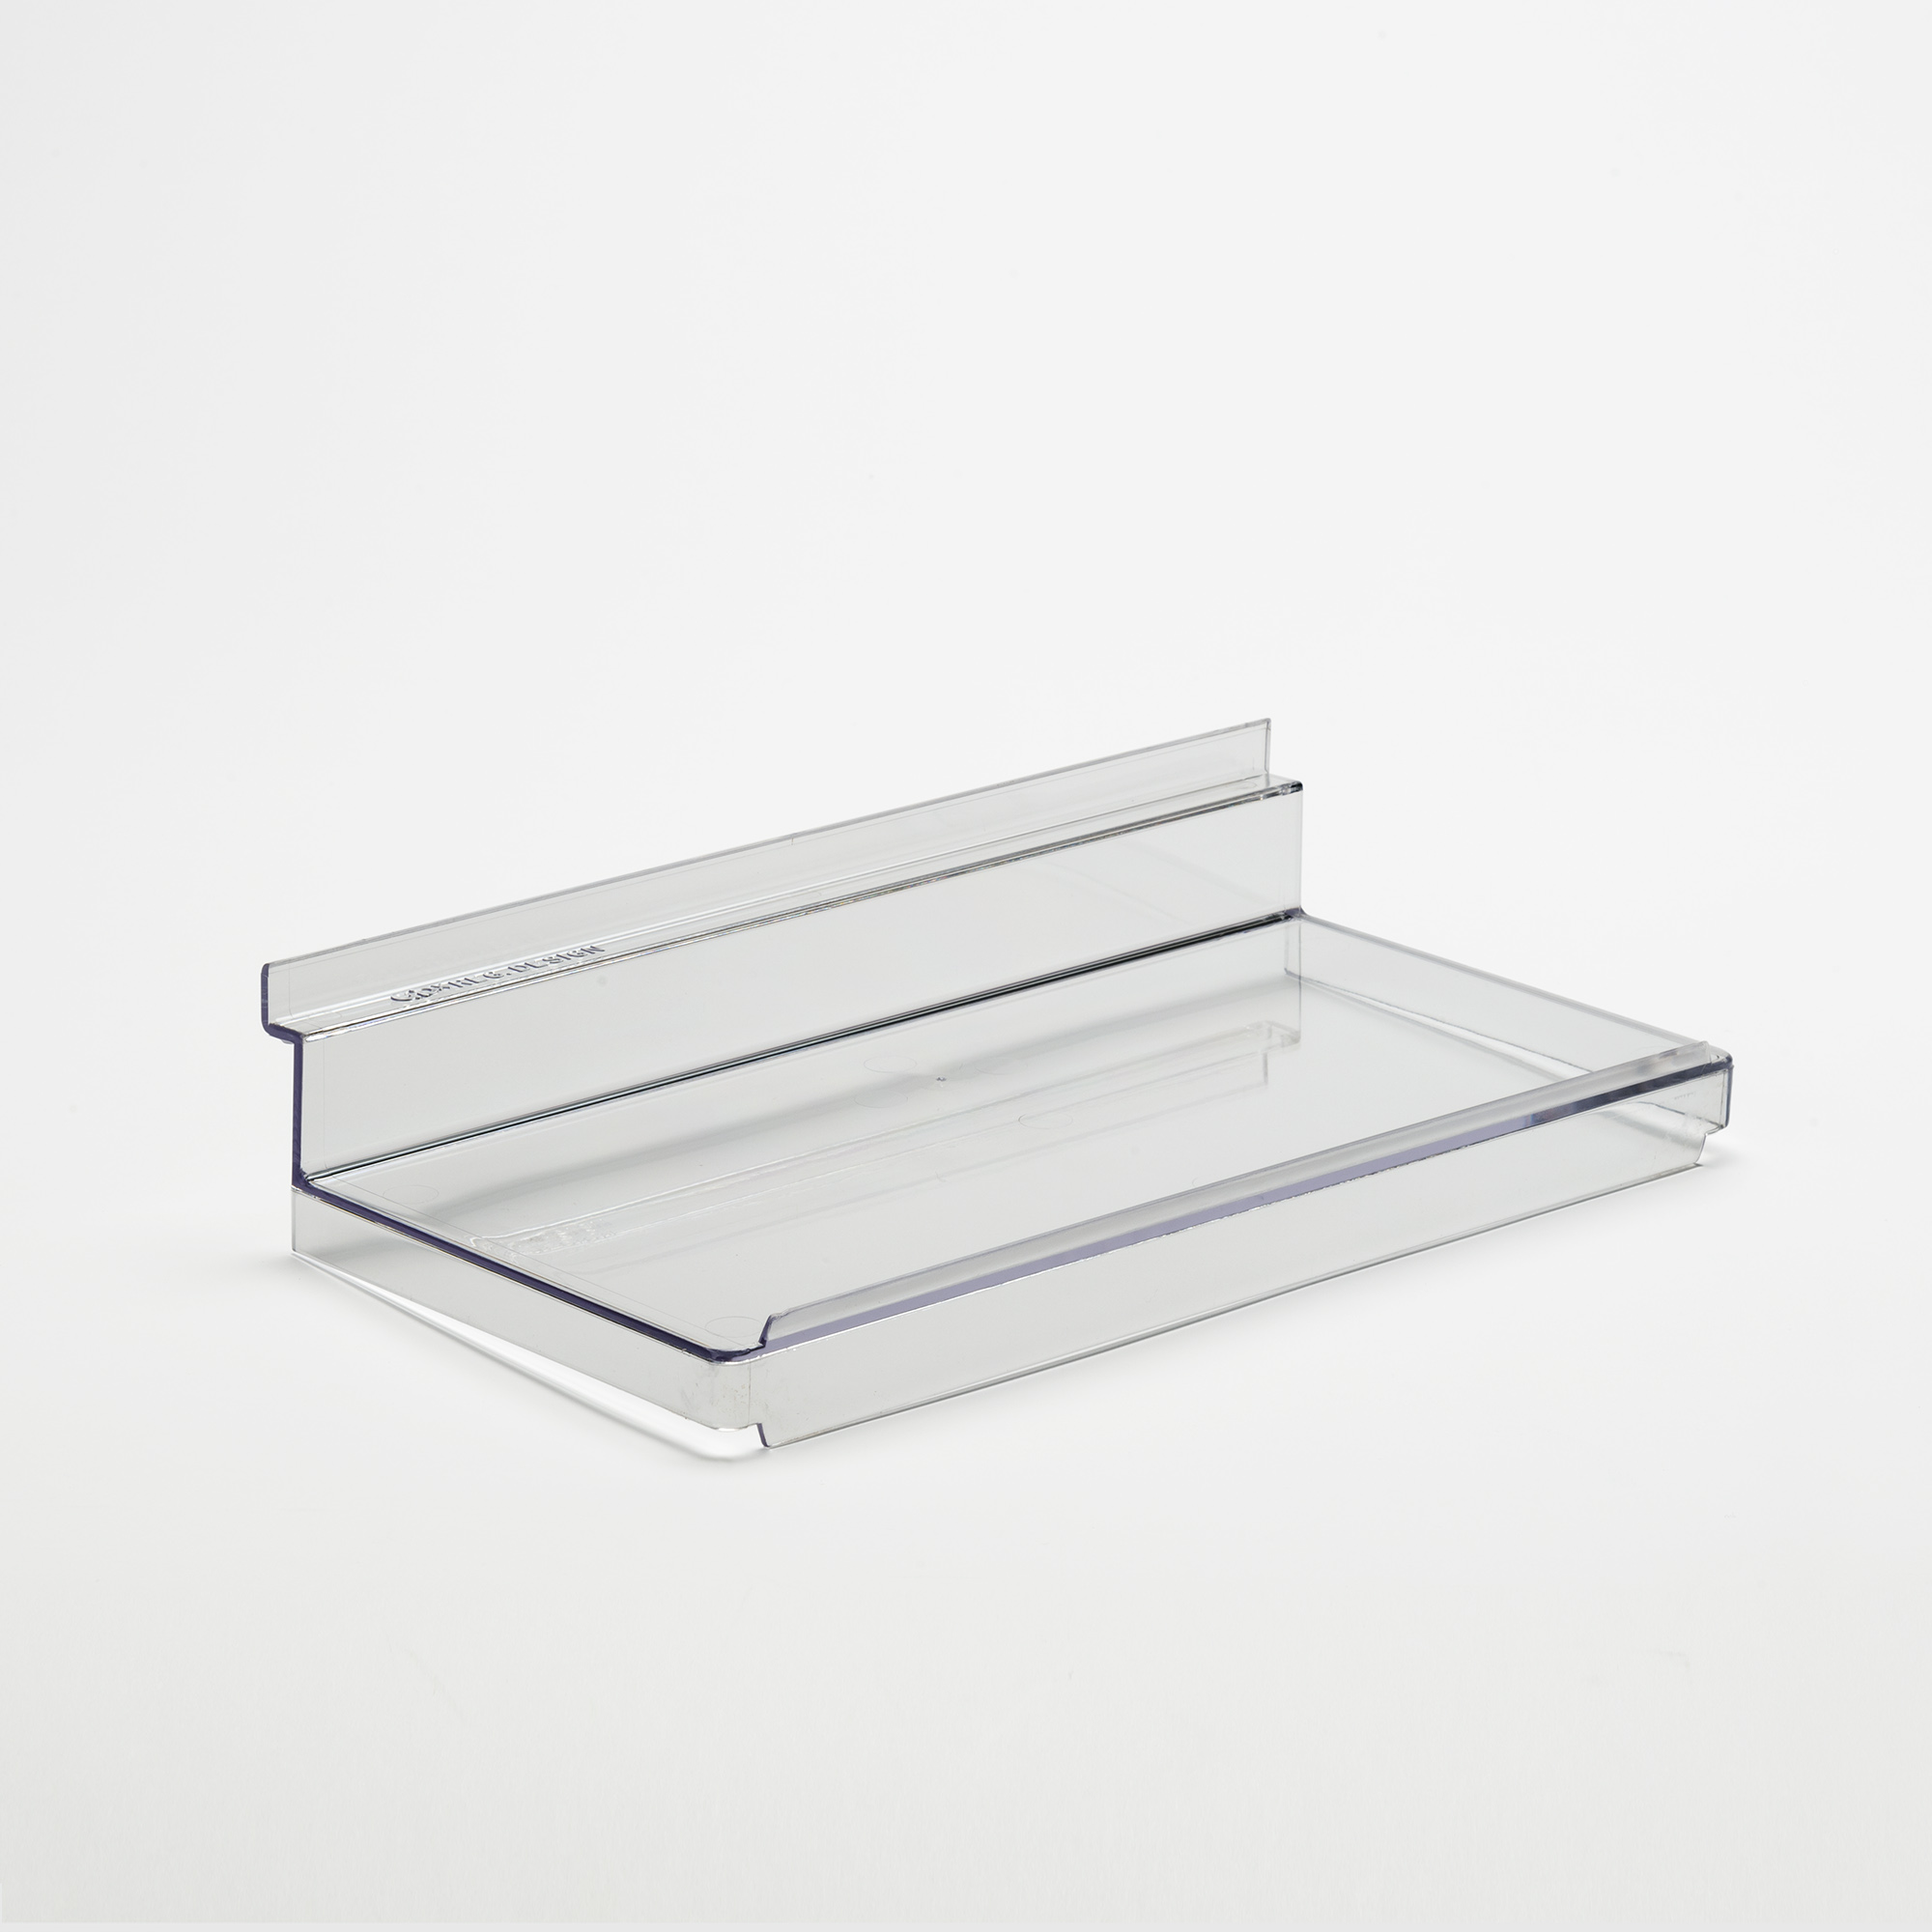 Flat Slatwall Shelf With Lip, Plastic Slatwall Shelves